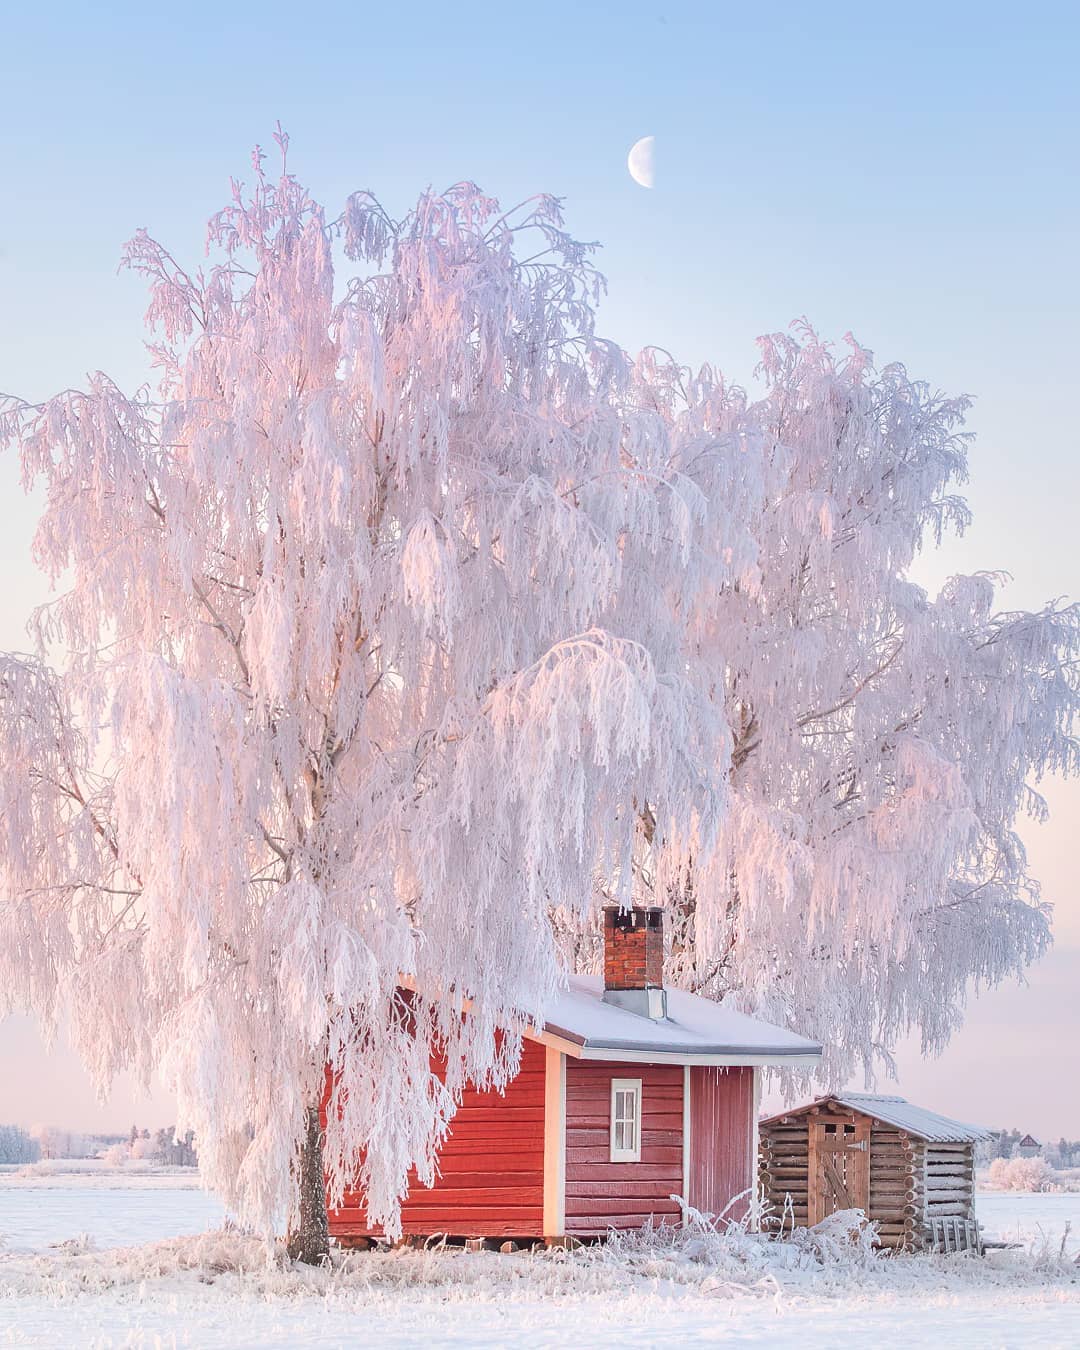 Финляндия зимой: в гостях у сказки Рисикко, снимает, Читать, подписчиков, более, Instagram, делится, работами, Своими, природы, дикой, фотографий, пейзажей, много, фотографии, Jukka, натурной, уличной, основном, фокусируется